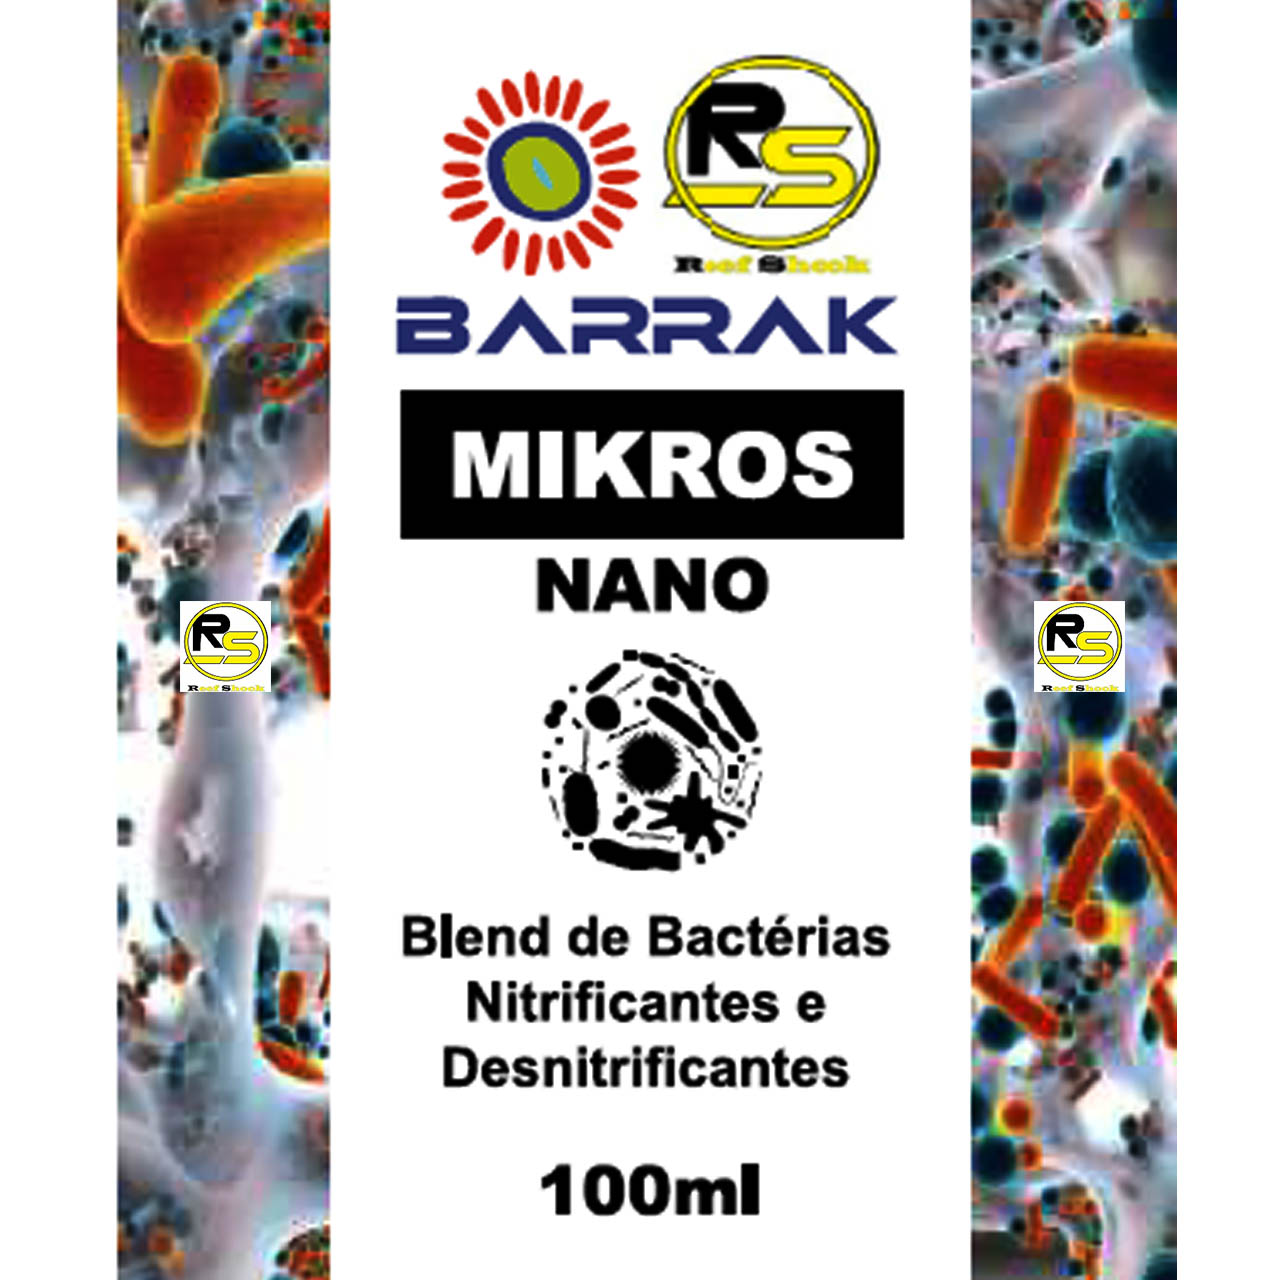 Barrak Mikros Nano 100ml Blend de Bactérias Nitrificantes e Desnitrificantes